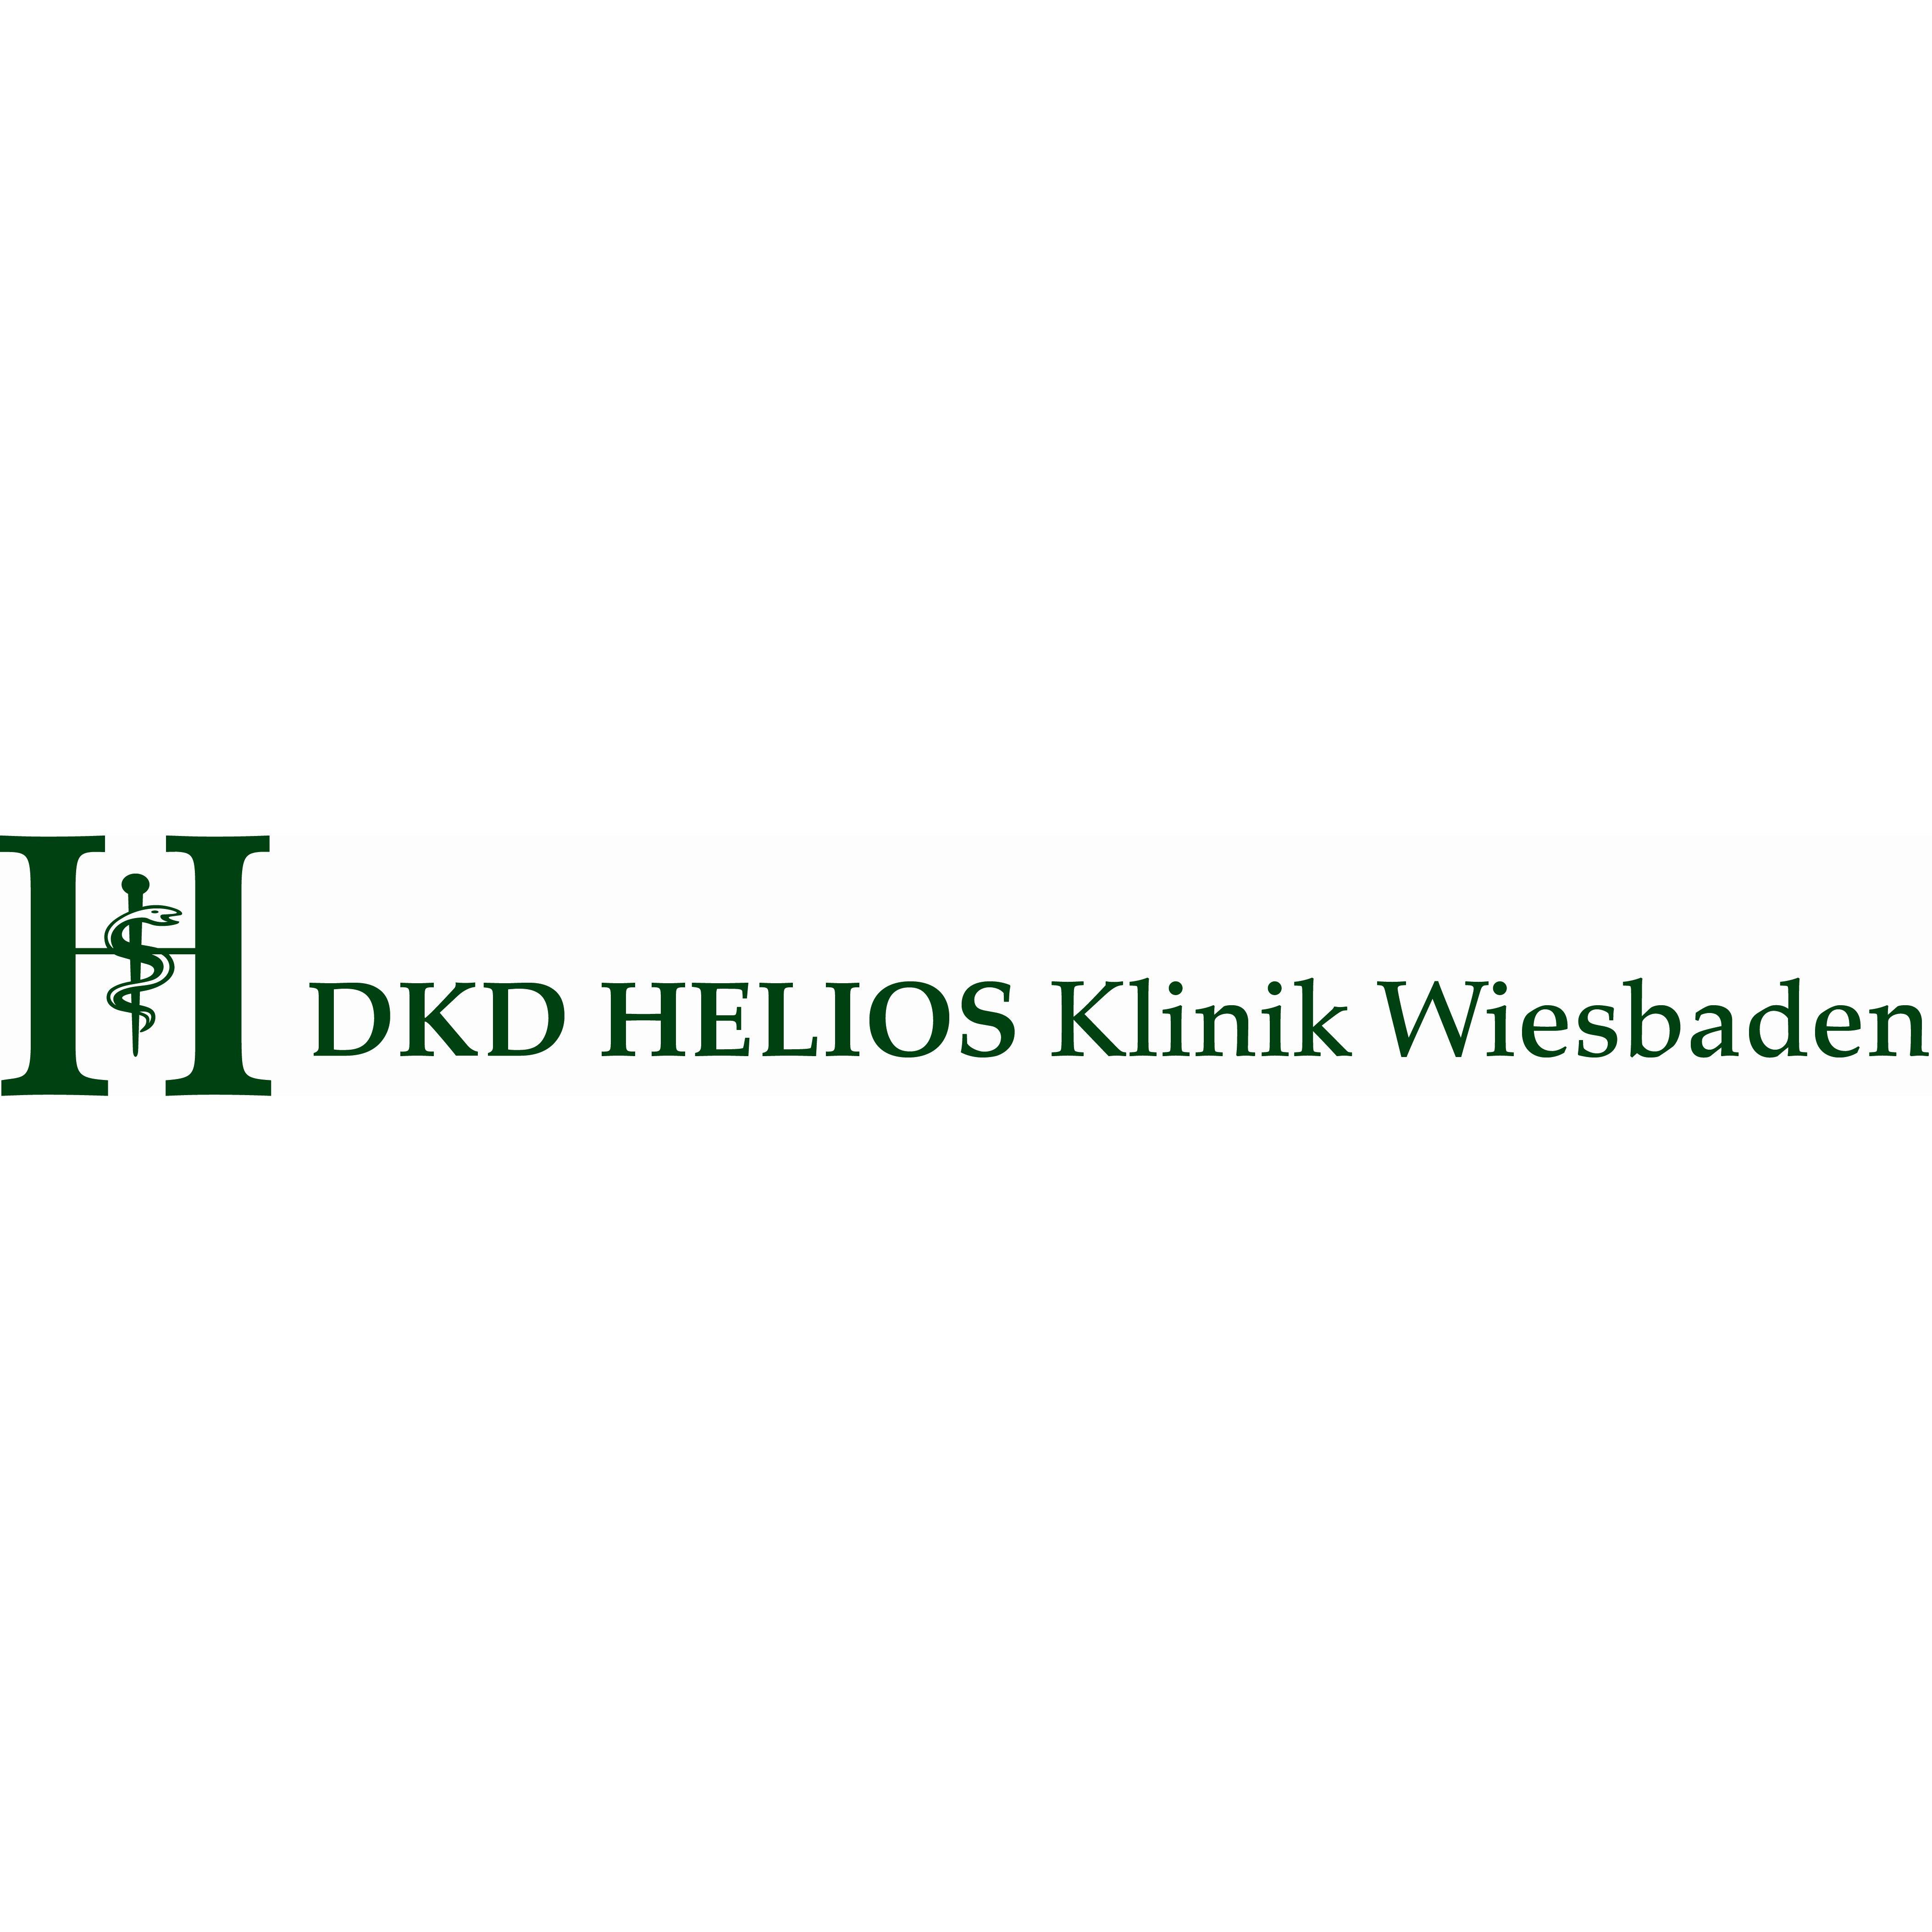 DKD HELIOS Wiesbaden